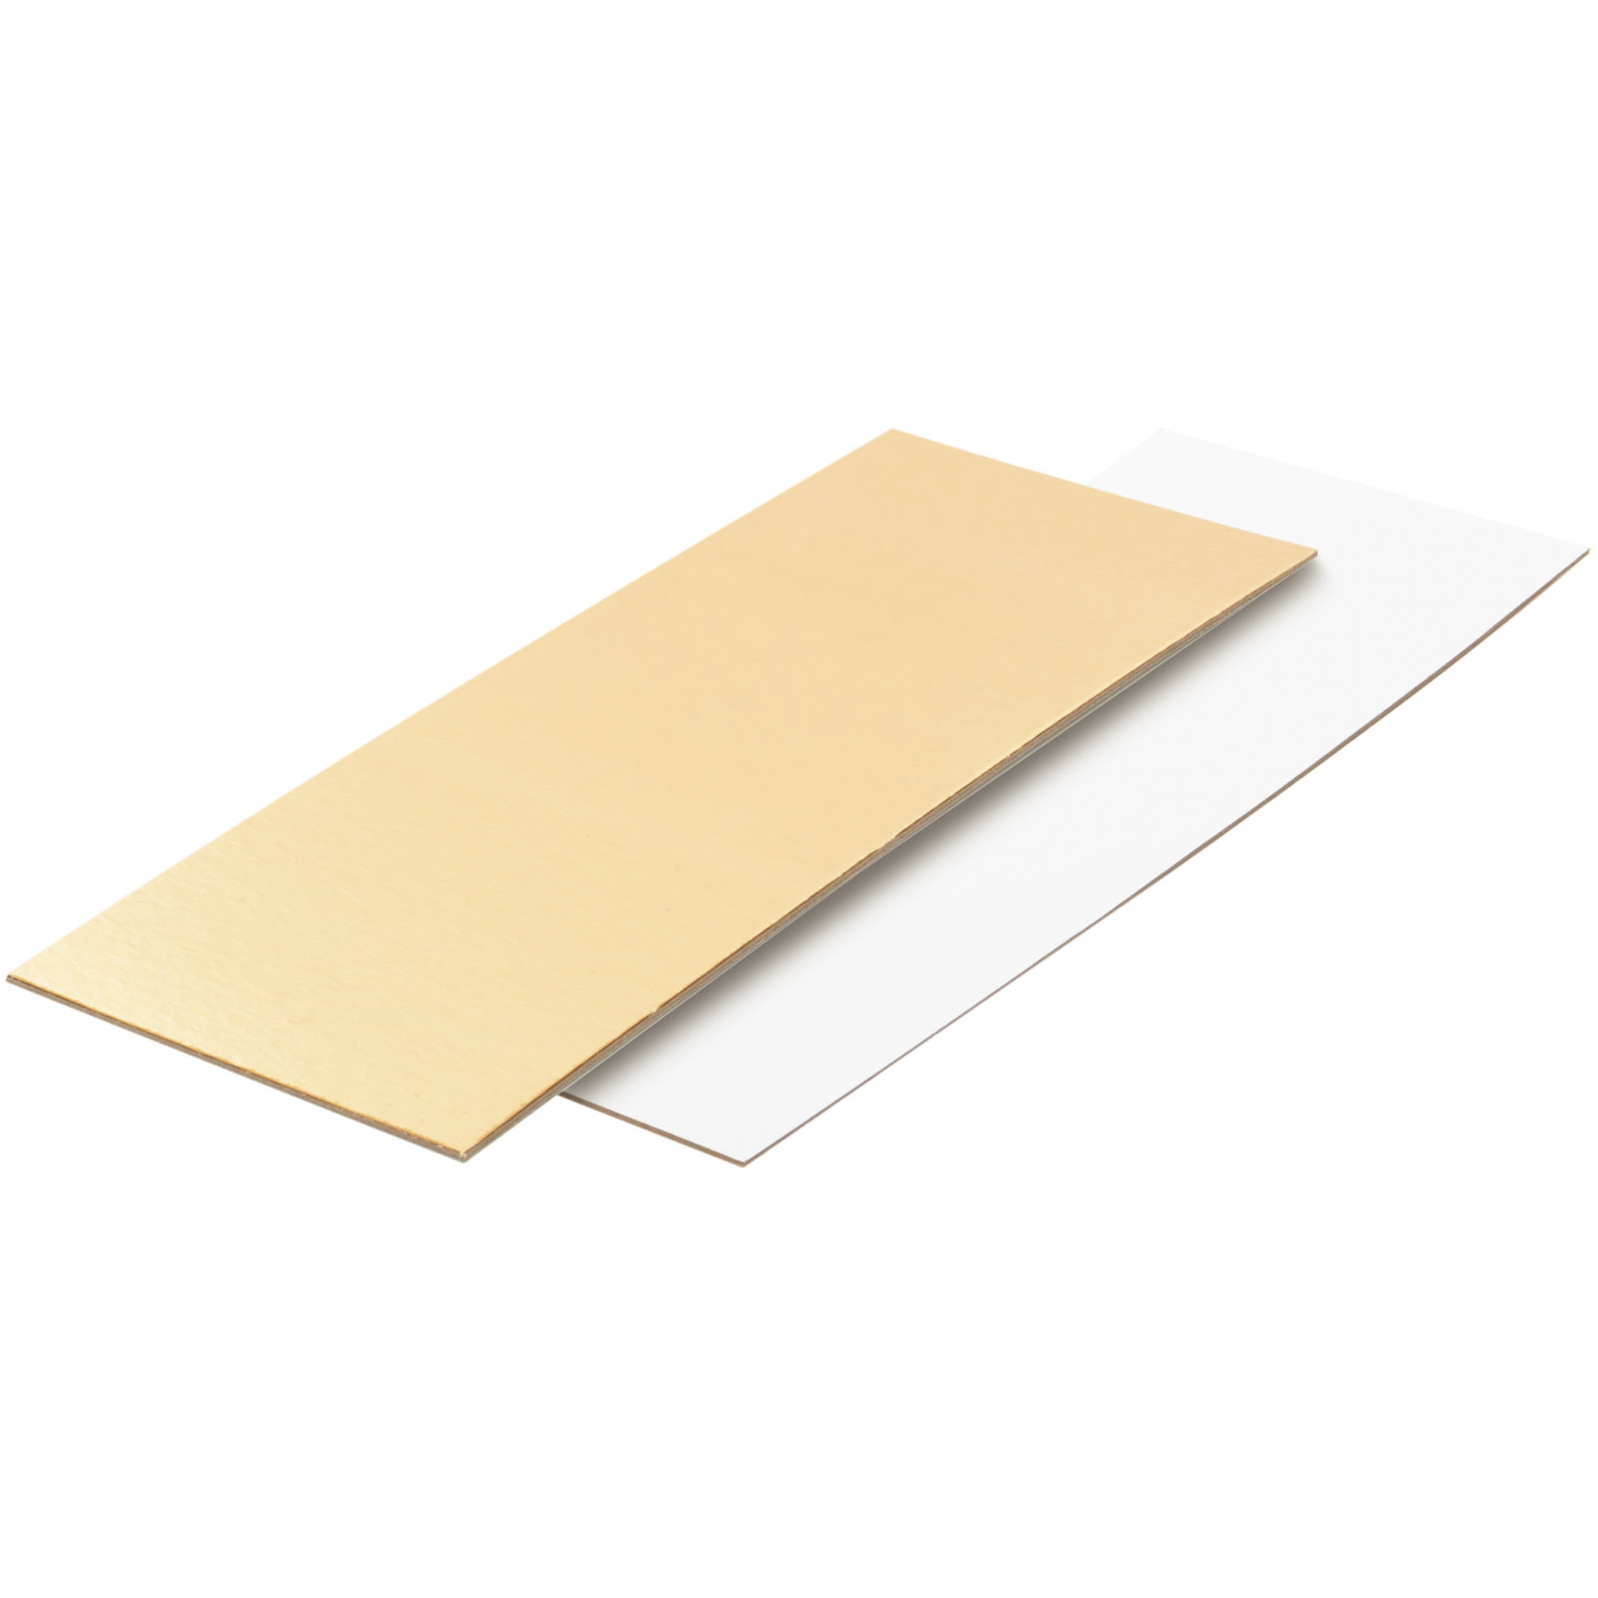 Подложка для рулета прямоугольная Золото/Белая 29,5х10,8 см, толщина 1,5 мм  | Фото — Магазин Andy Chef  1